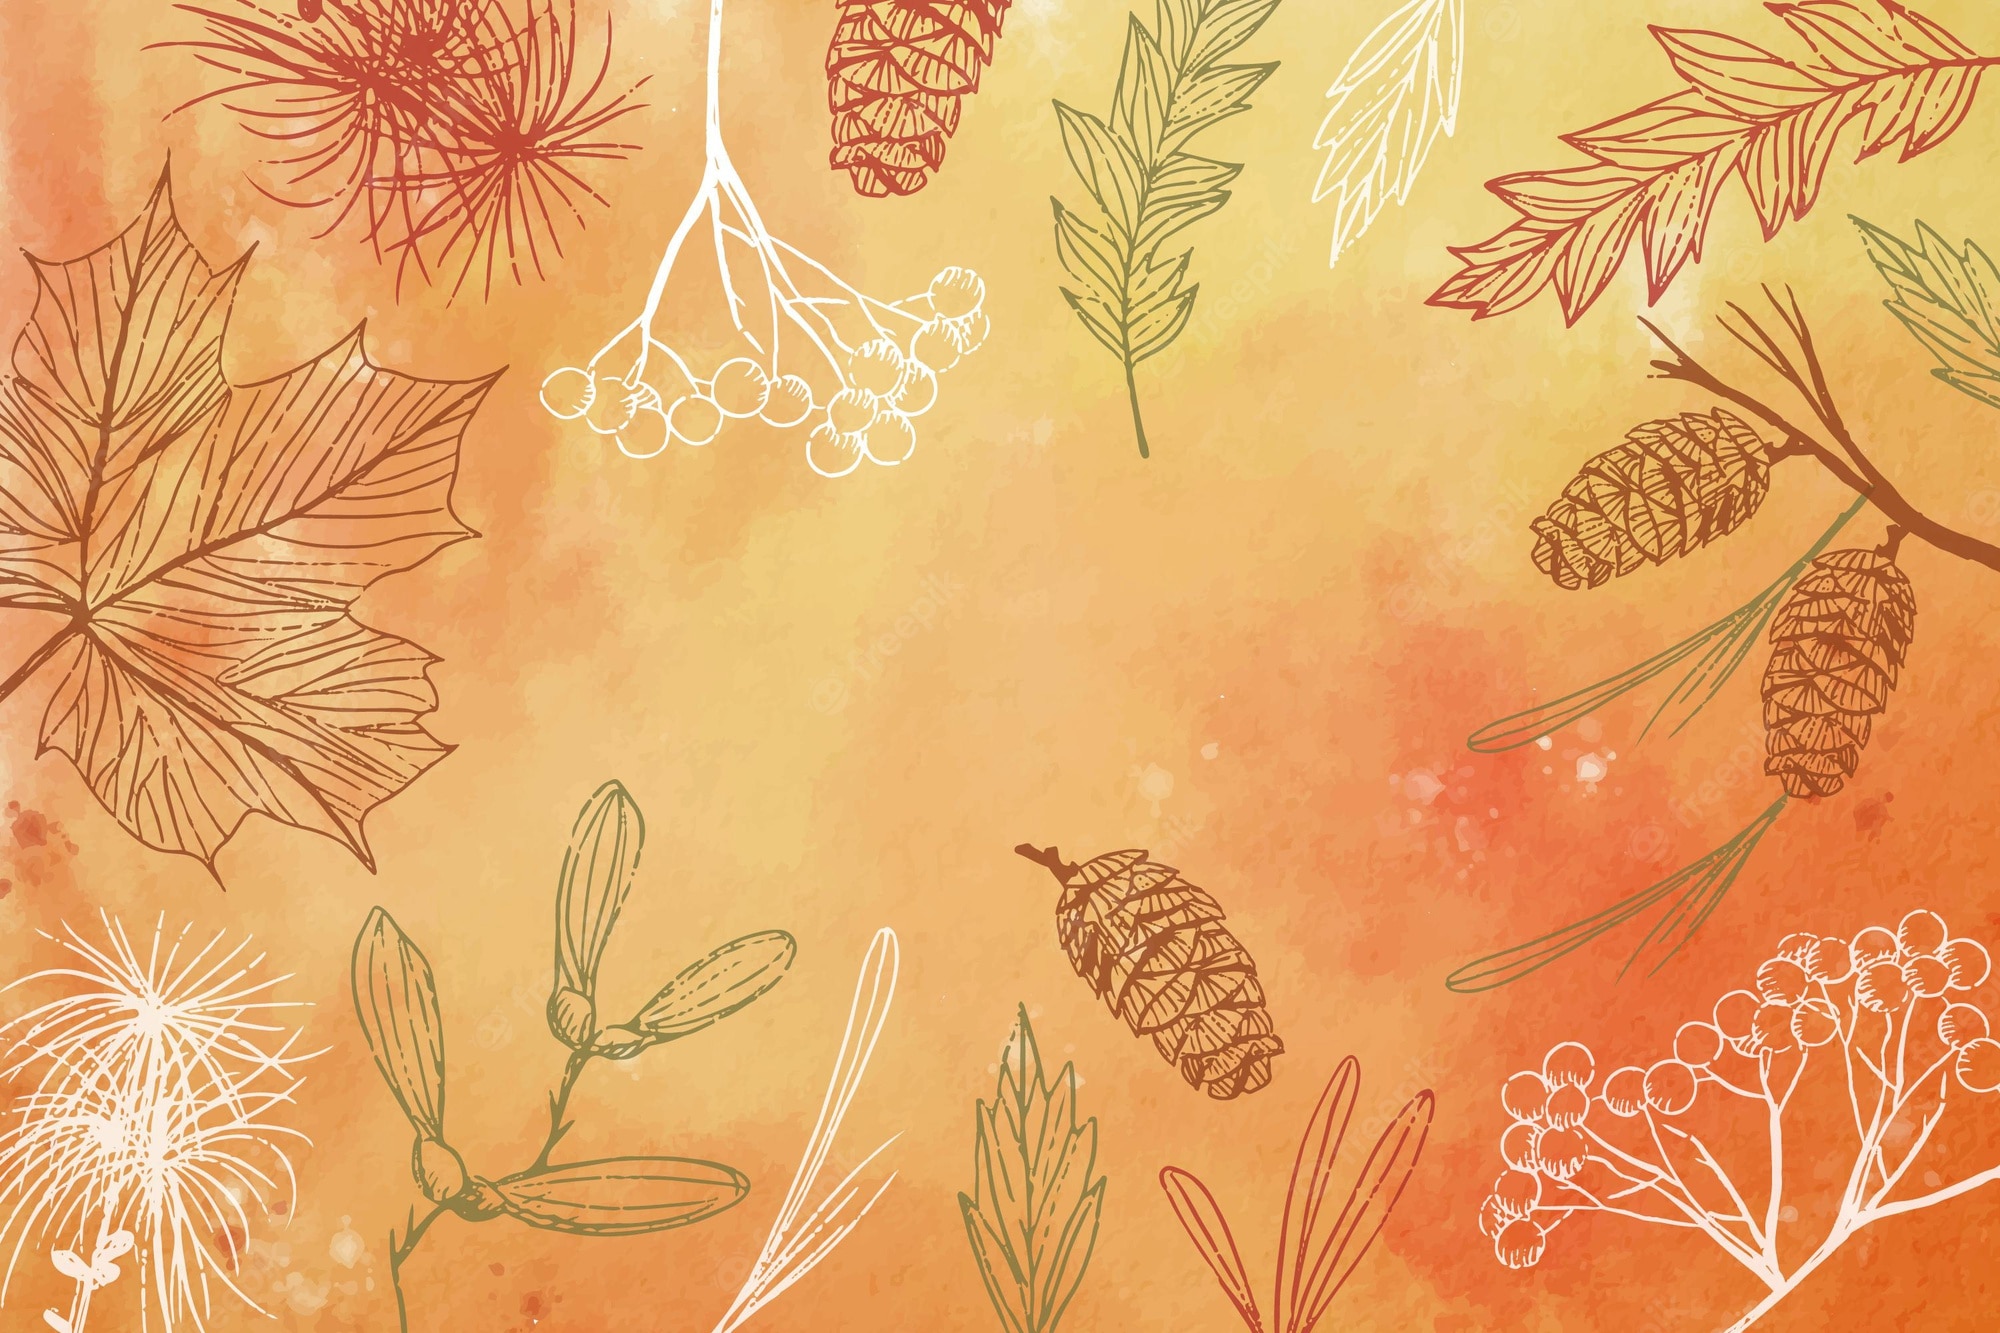 Autumn wallpaper Vectors & Illustrations for Free Download